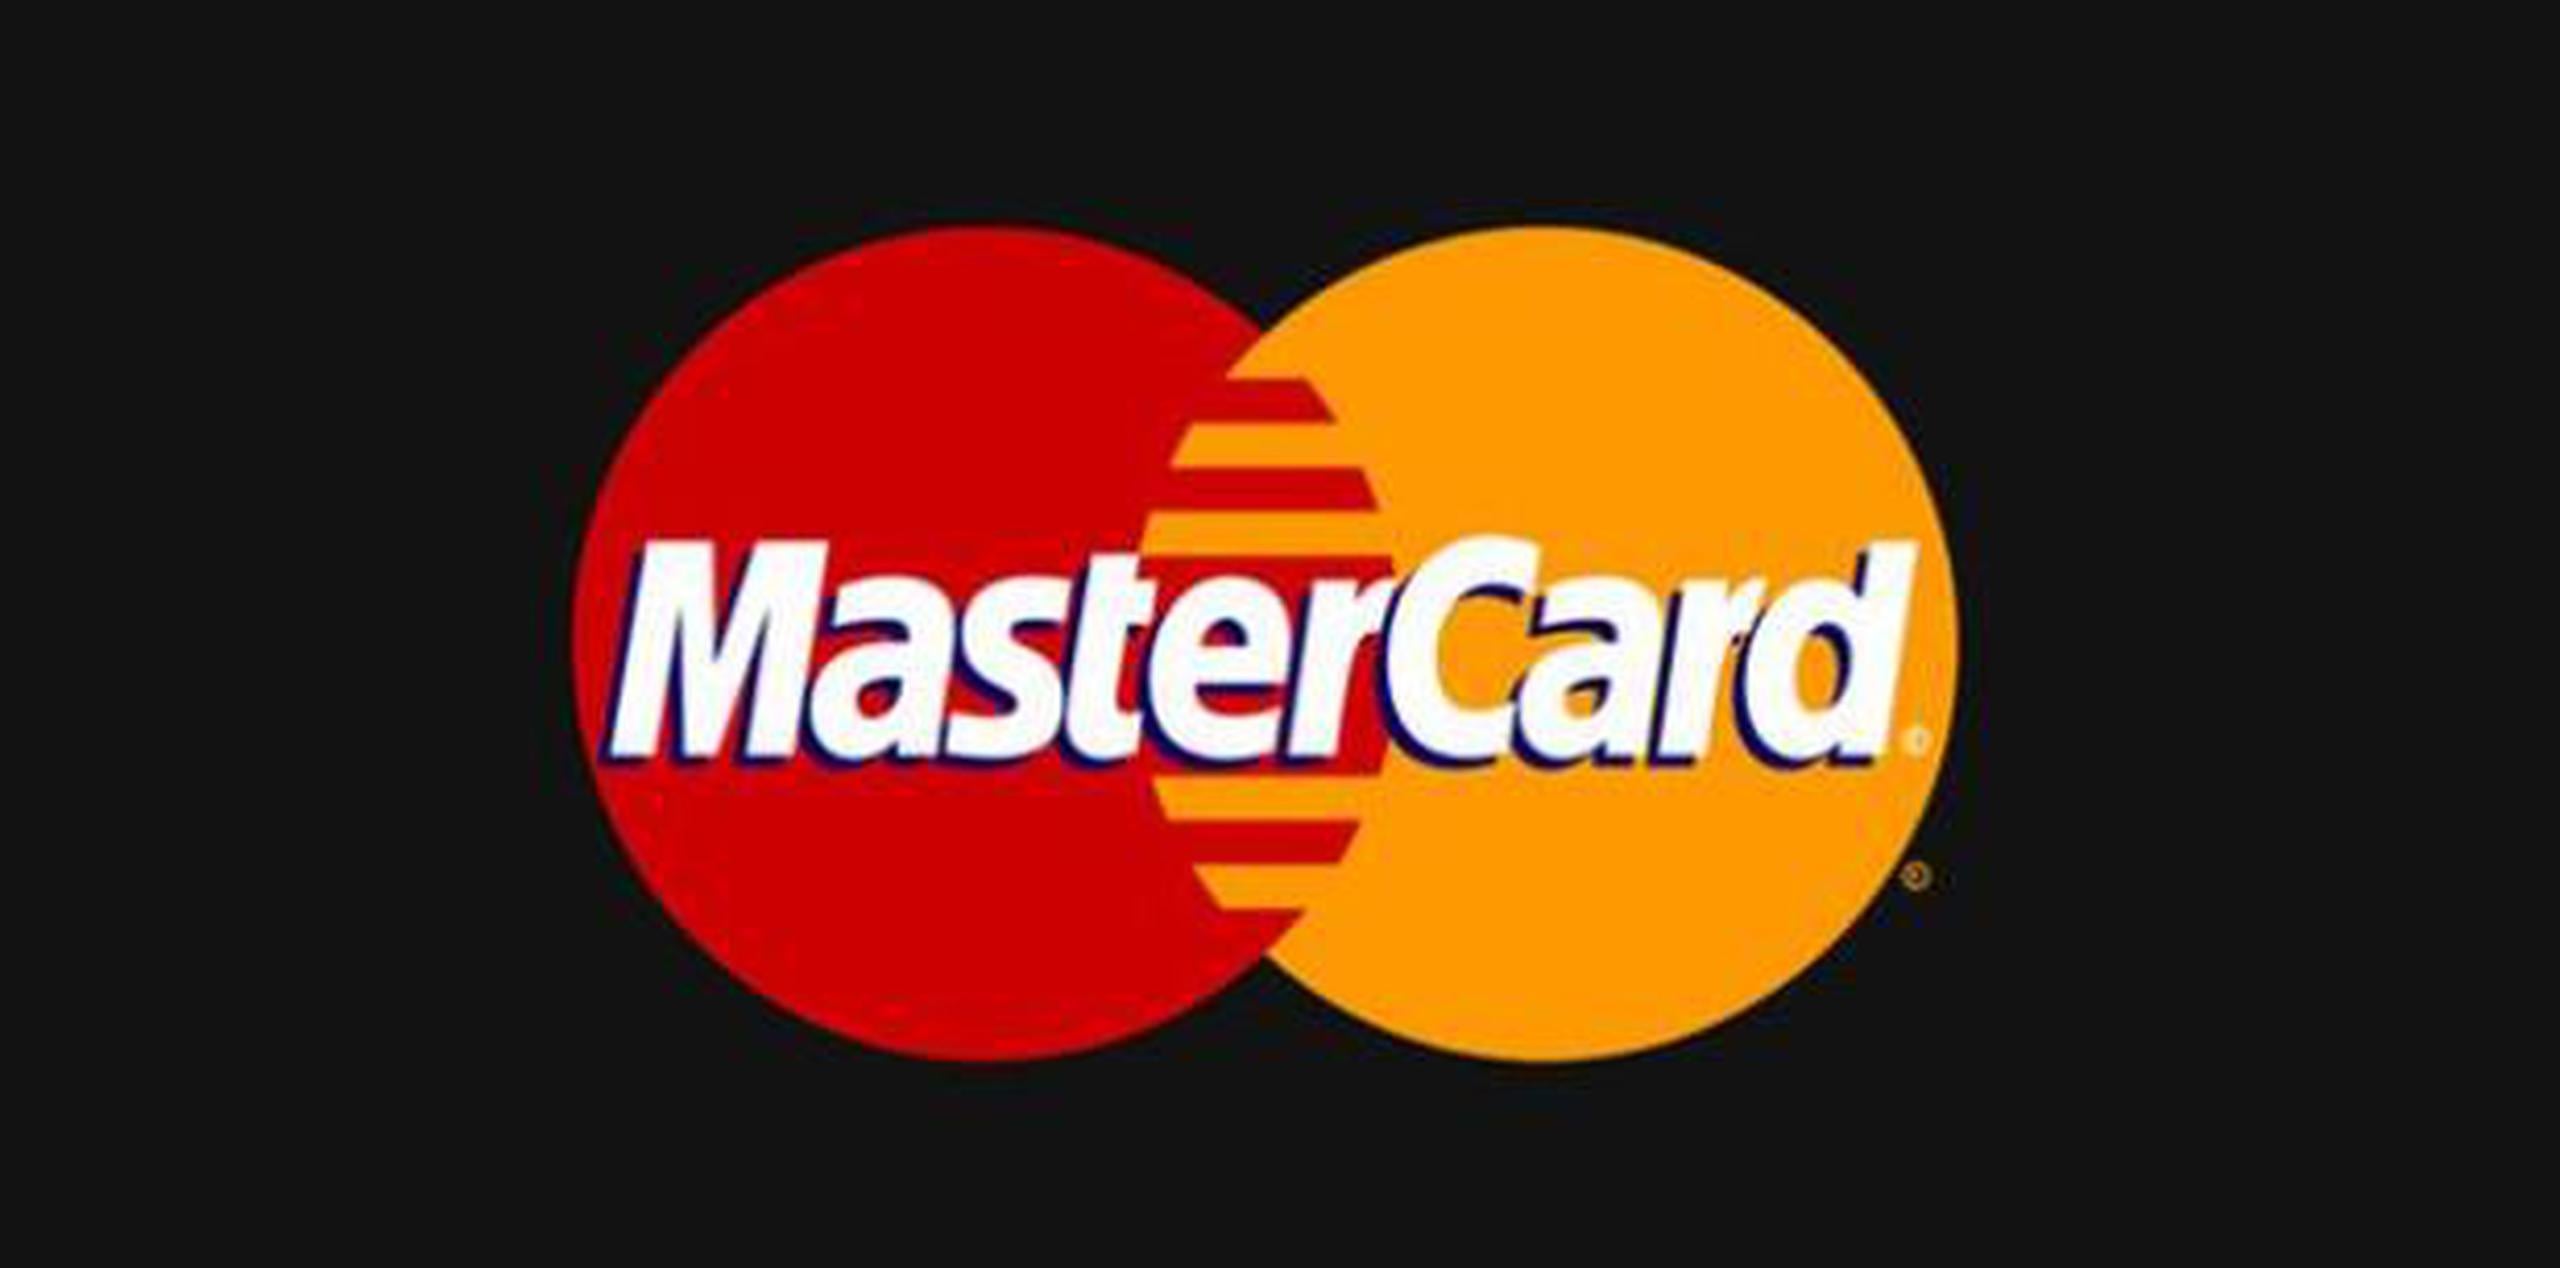 Los cambios anunciados por la empresa, al igual que con muchas campañas de cambio de imagen corporativa, también tienen sus detractores. (Mastercard)